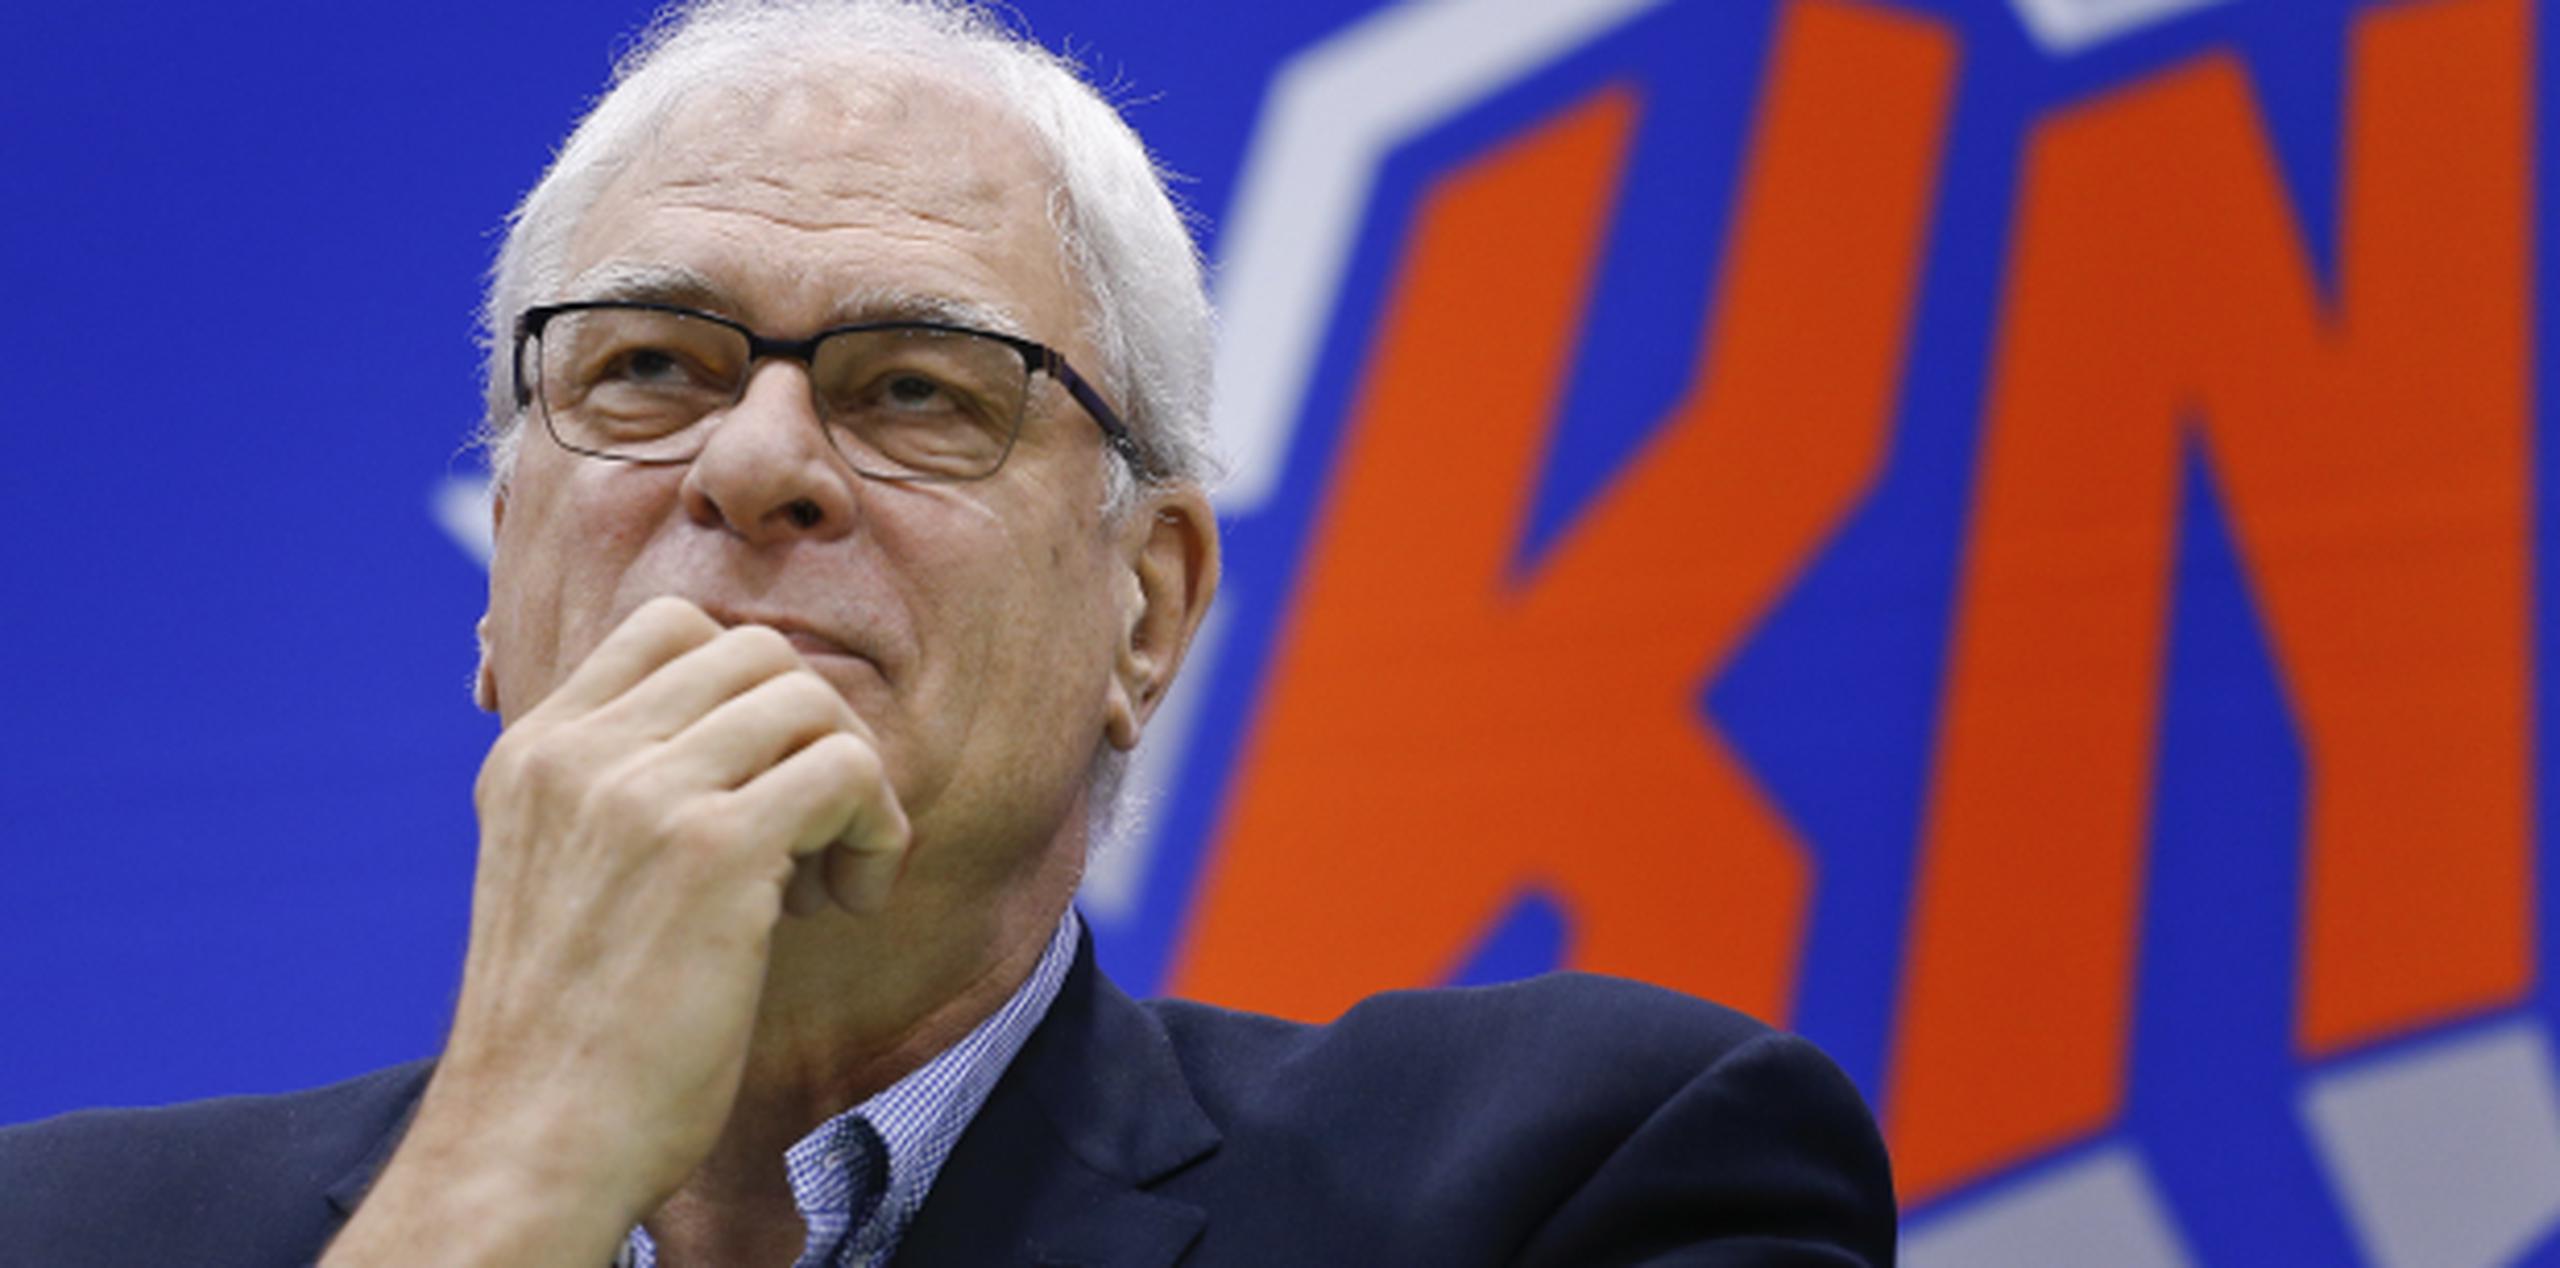 Jackson impuso una marca de la NBA con 11 campeonatos como entrenador, pero como presidente de la organización no pudo llevar a los Knicks a playoffs. (AP)